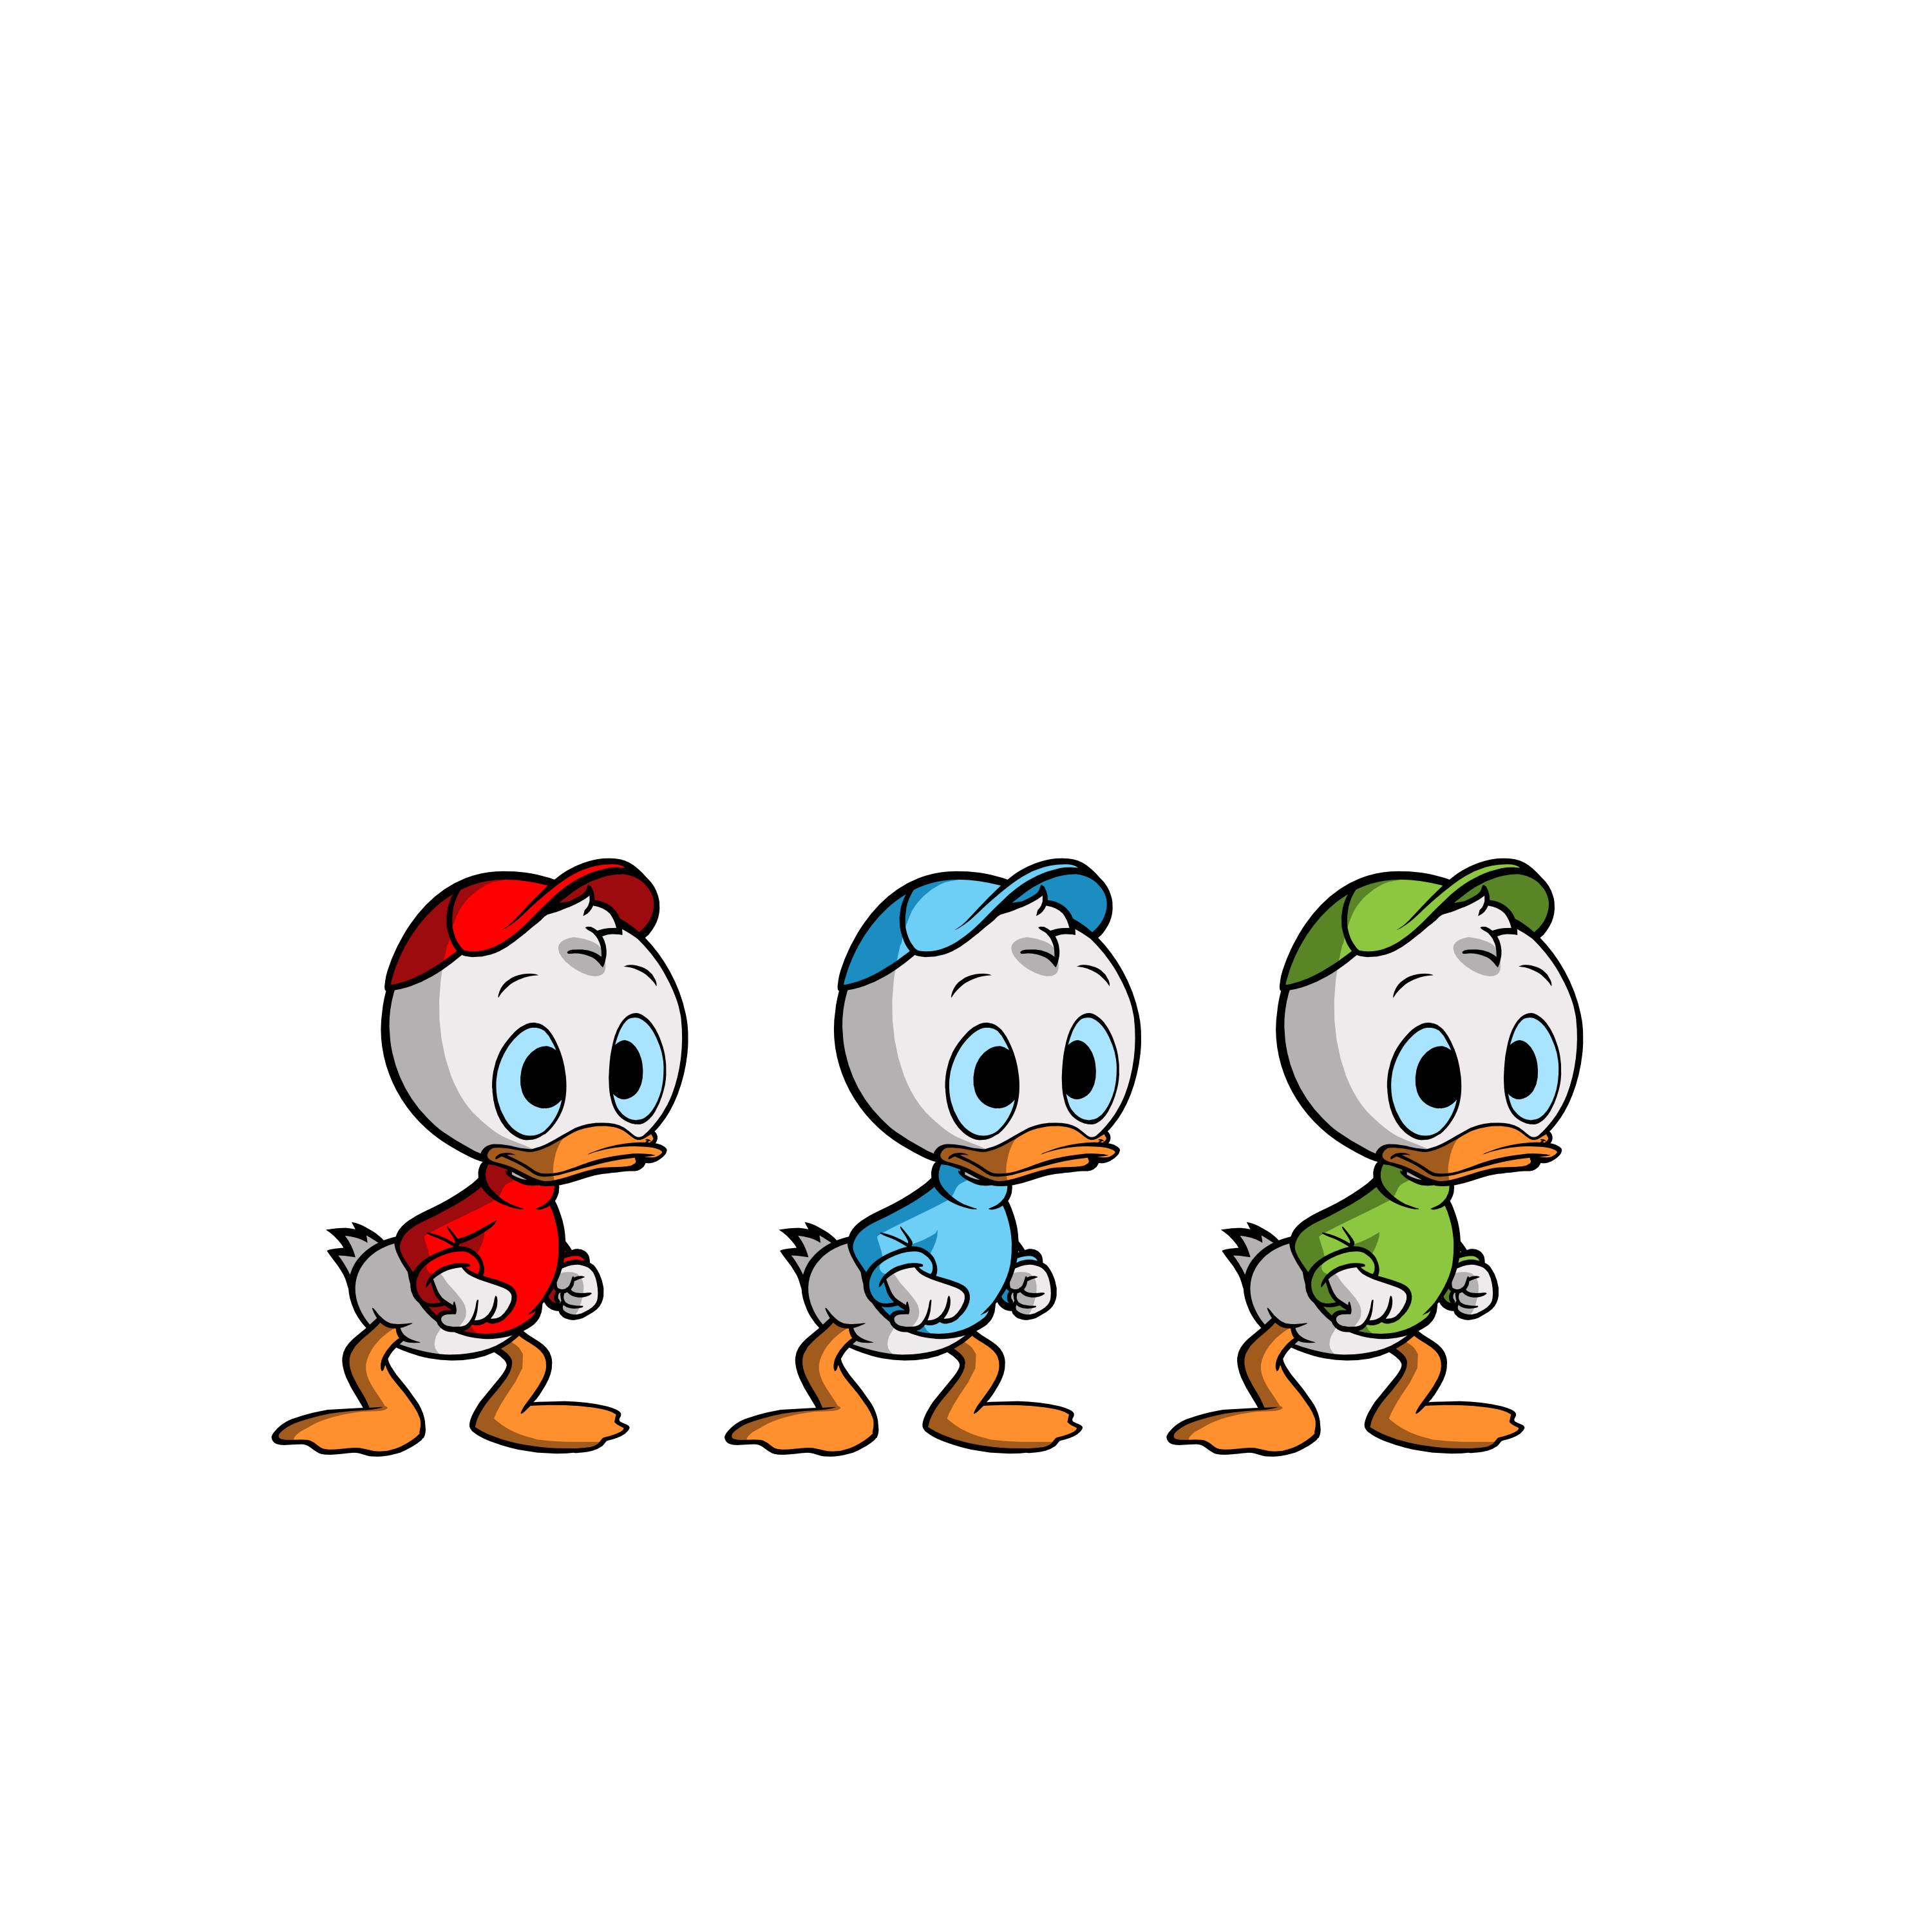 Huey, Dewey and Louie - Disney Wiki